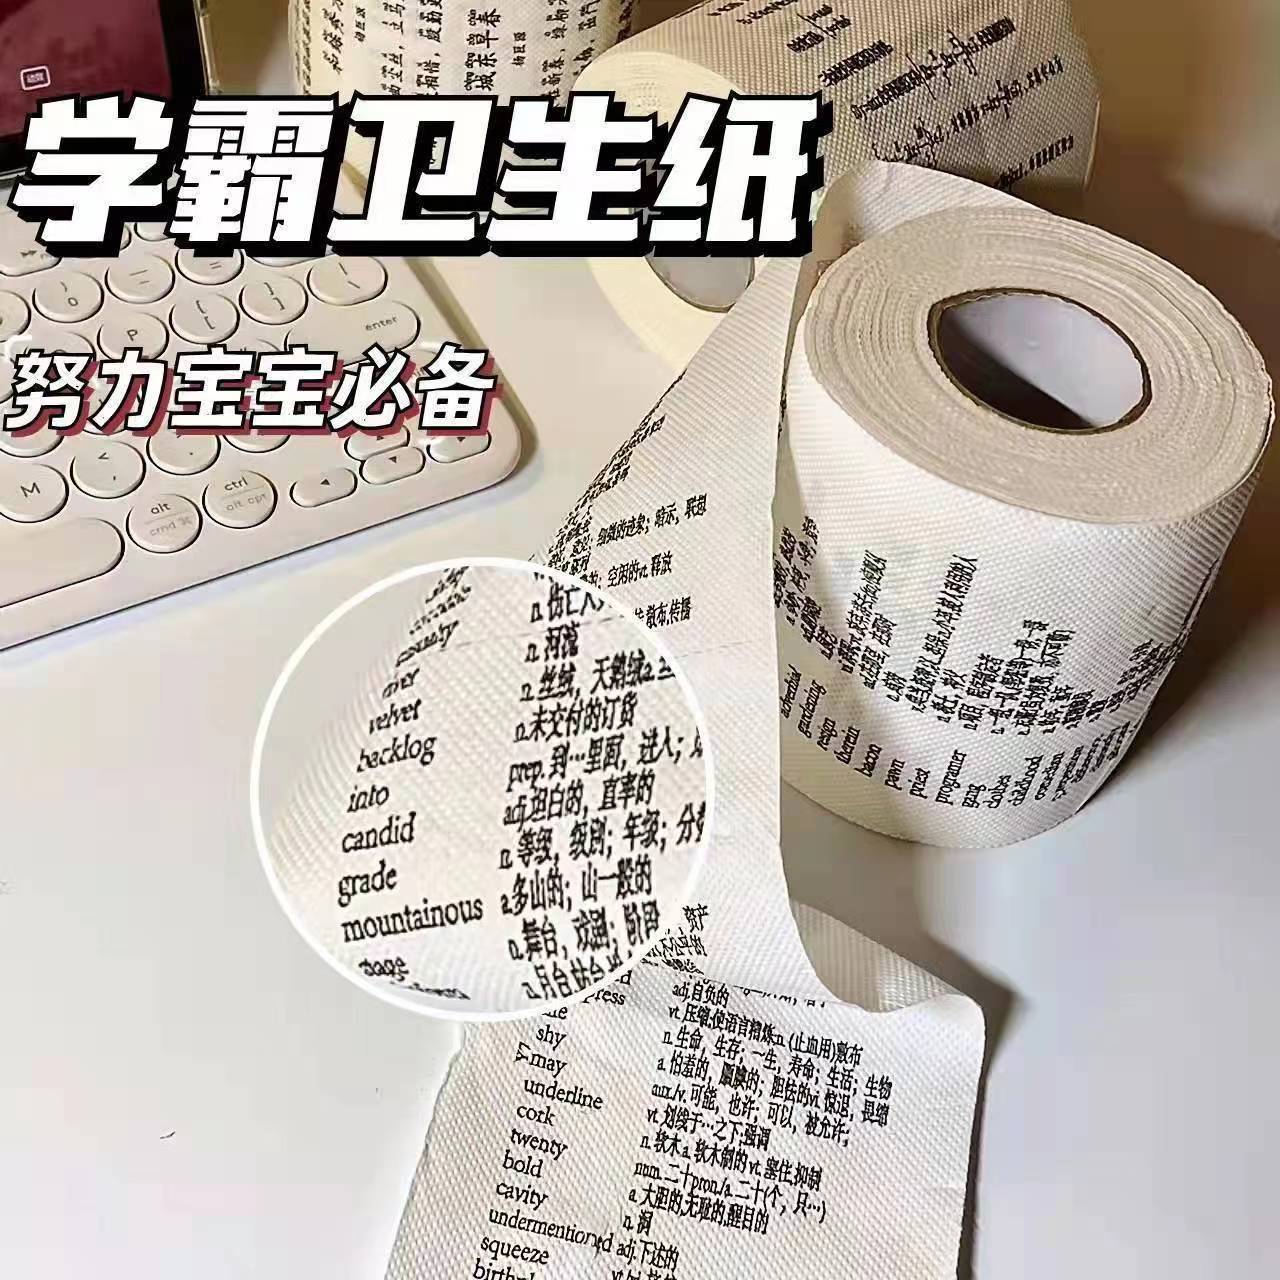 学霸英语单词卷纸创意有趣纸巾初高中公式卫生厕纸学习个性手纸